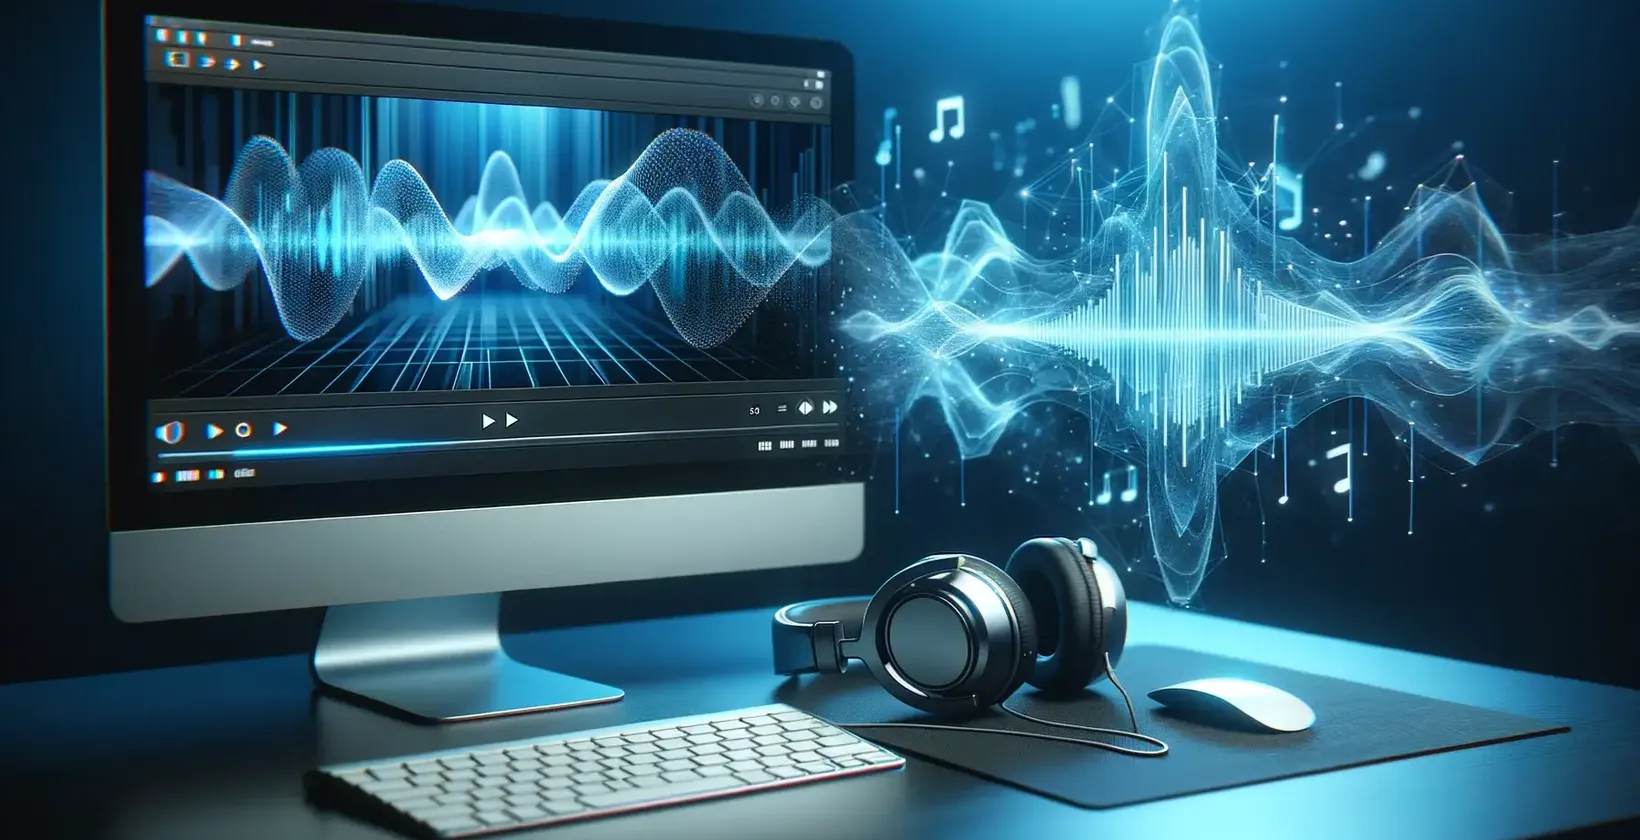 Perisian transkripsi audio lanjutan diwakili oleh monitor dengan bentuk gelombang audio dan fon kepala